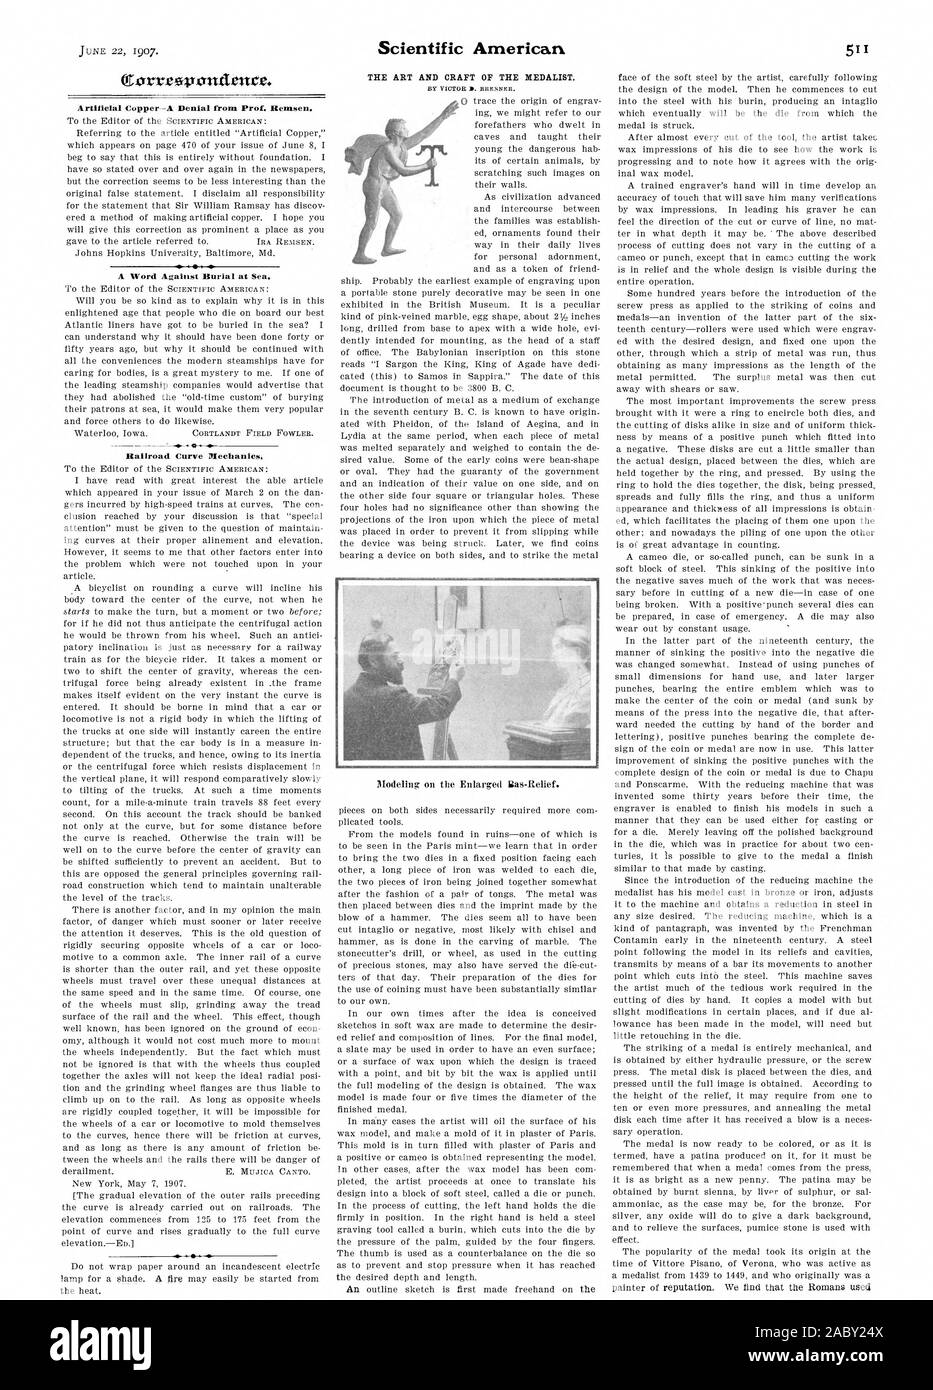 (Corr eovontIence. Künstliche Kupfer - eine Verweigerung von Prof. Remsen. Ein Wort gegen Bestattung auf See., Scientific American, 1907-06-22 Stockfoto